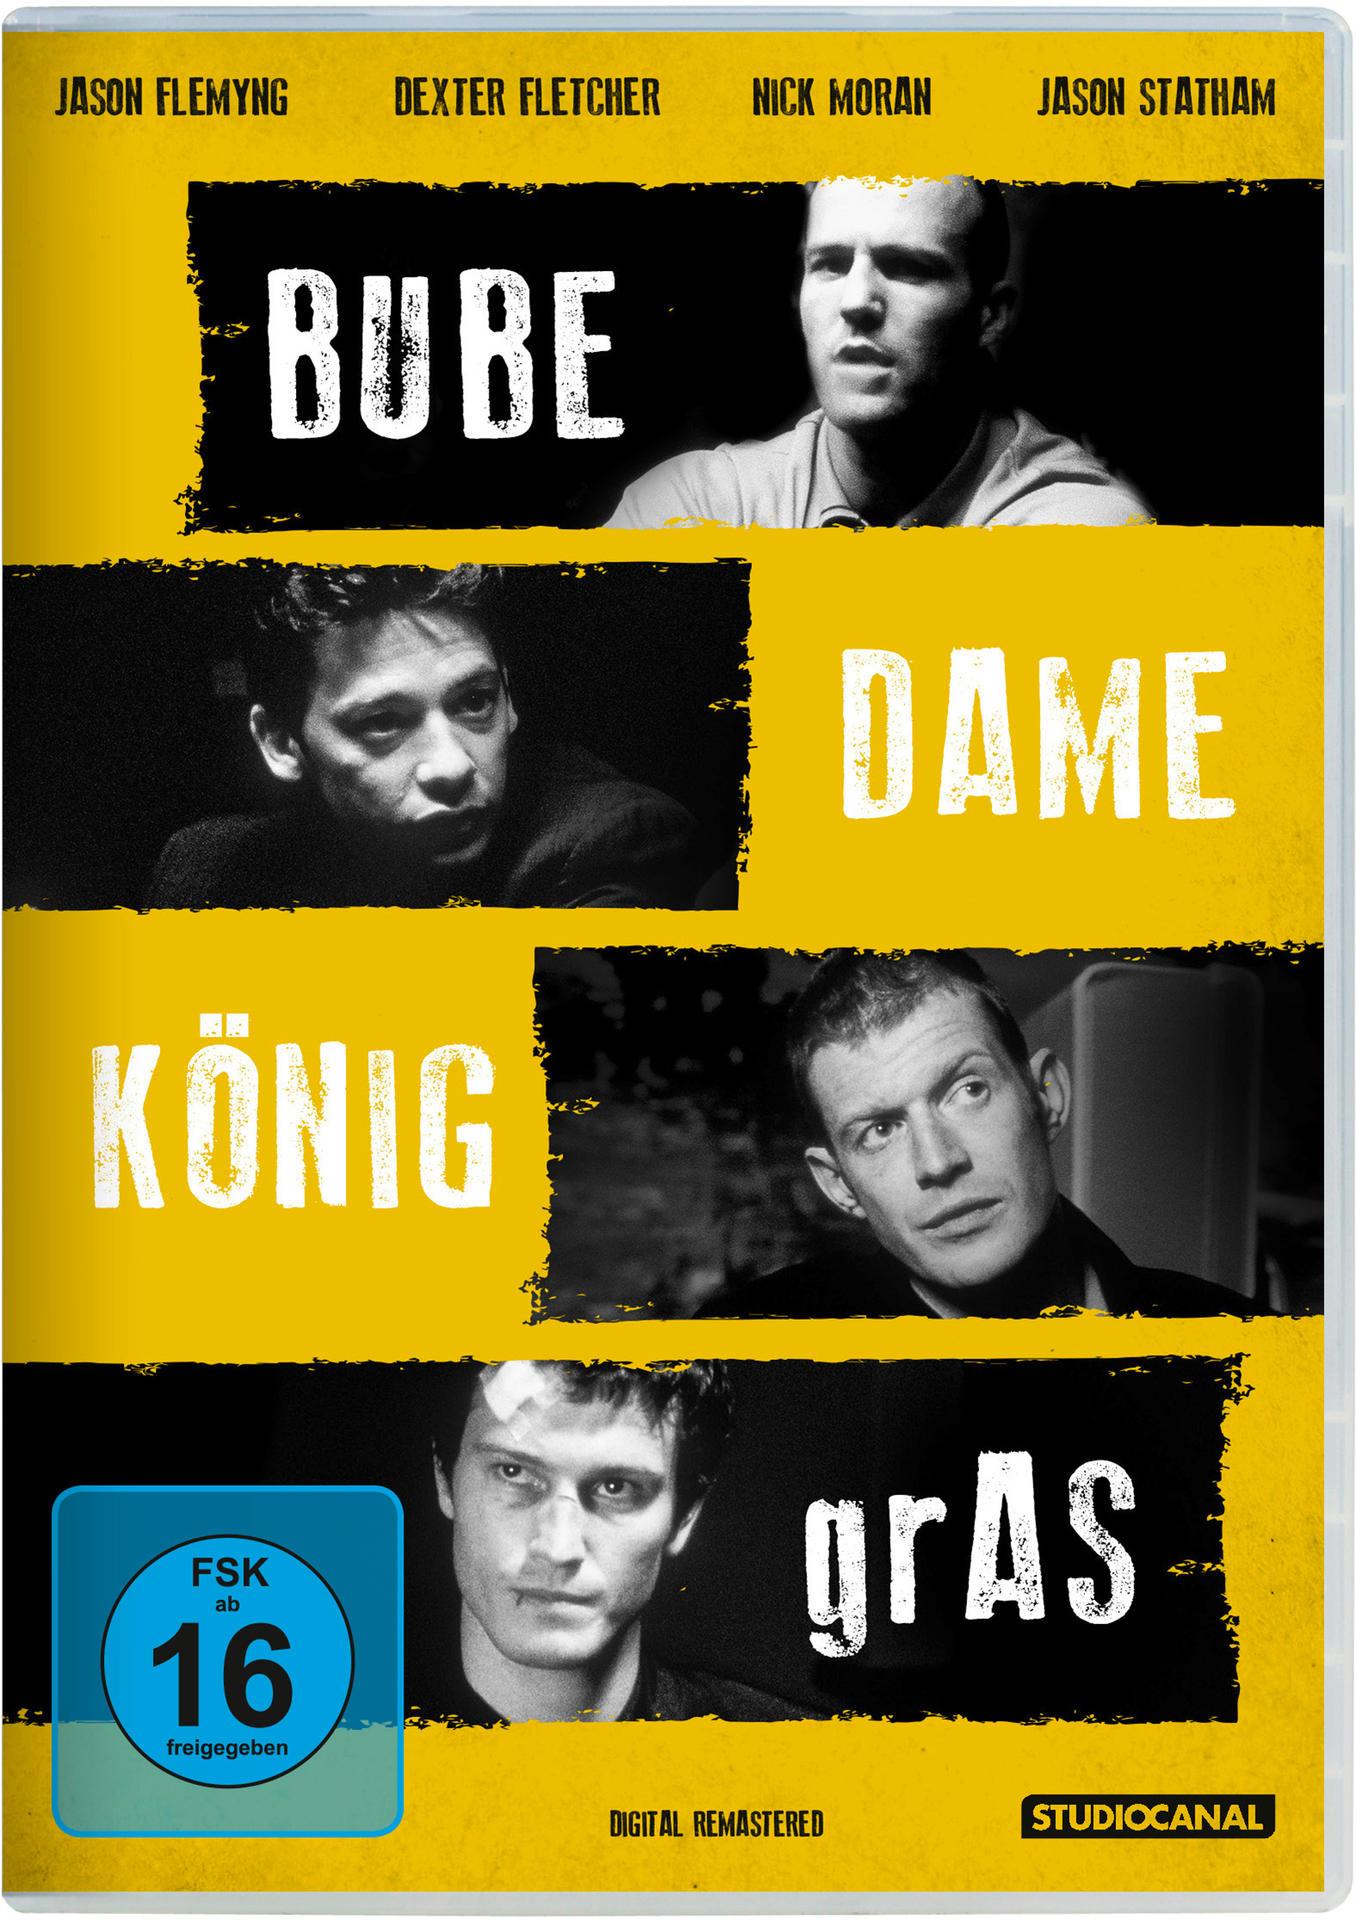 DVD GRAS DAME BUBE (DIGITAL REMASTERED) KÖNIG